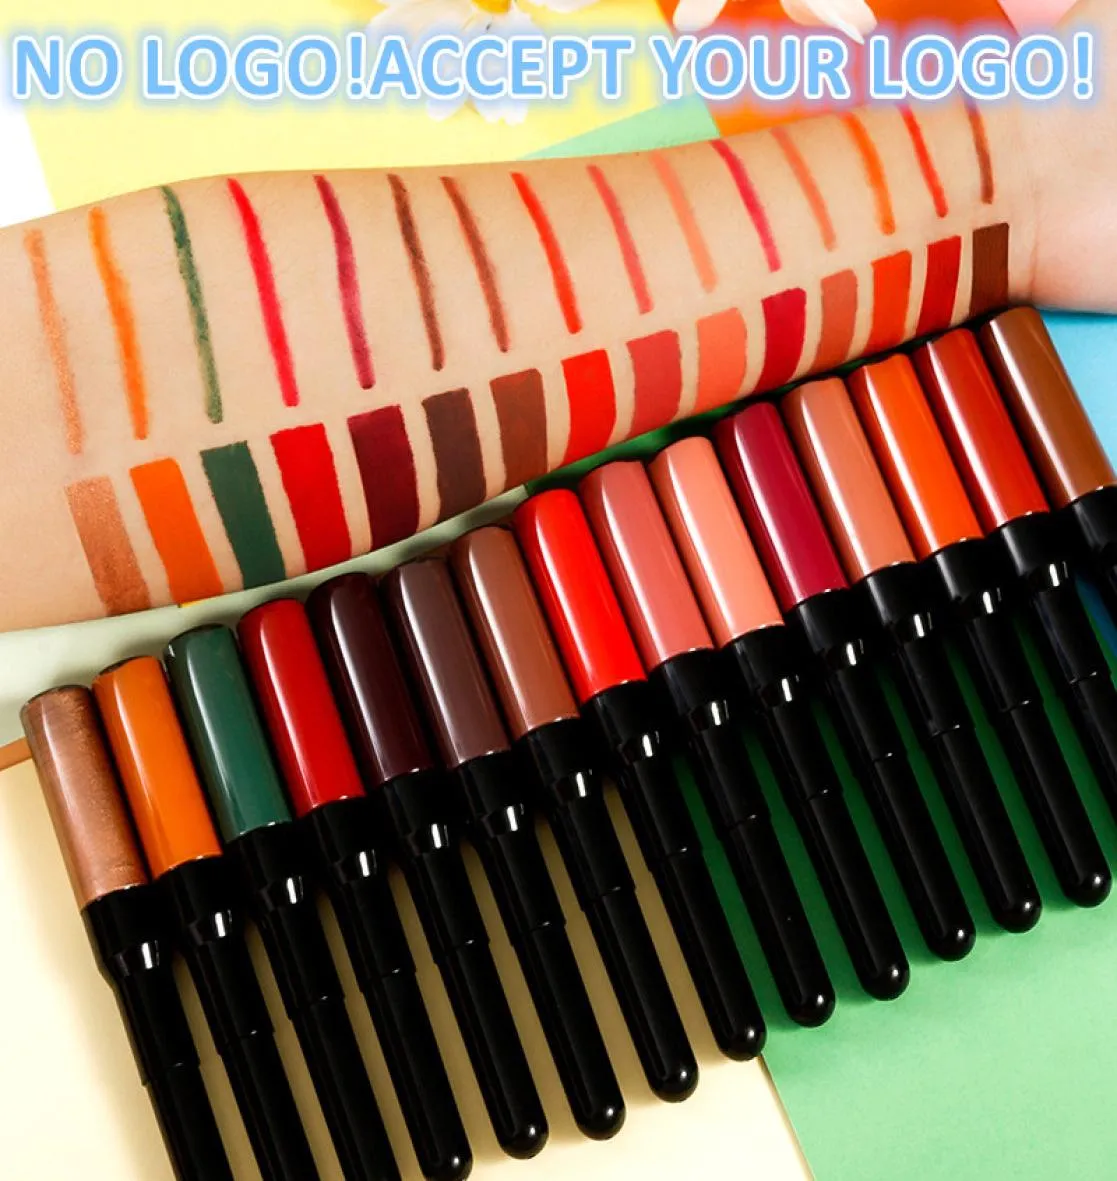 Aucune marque 2in1 LIP CURN MATTE Lipstick imperrophétre de longue durée Lépliner Acceptez votre logo Printing2492159